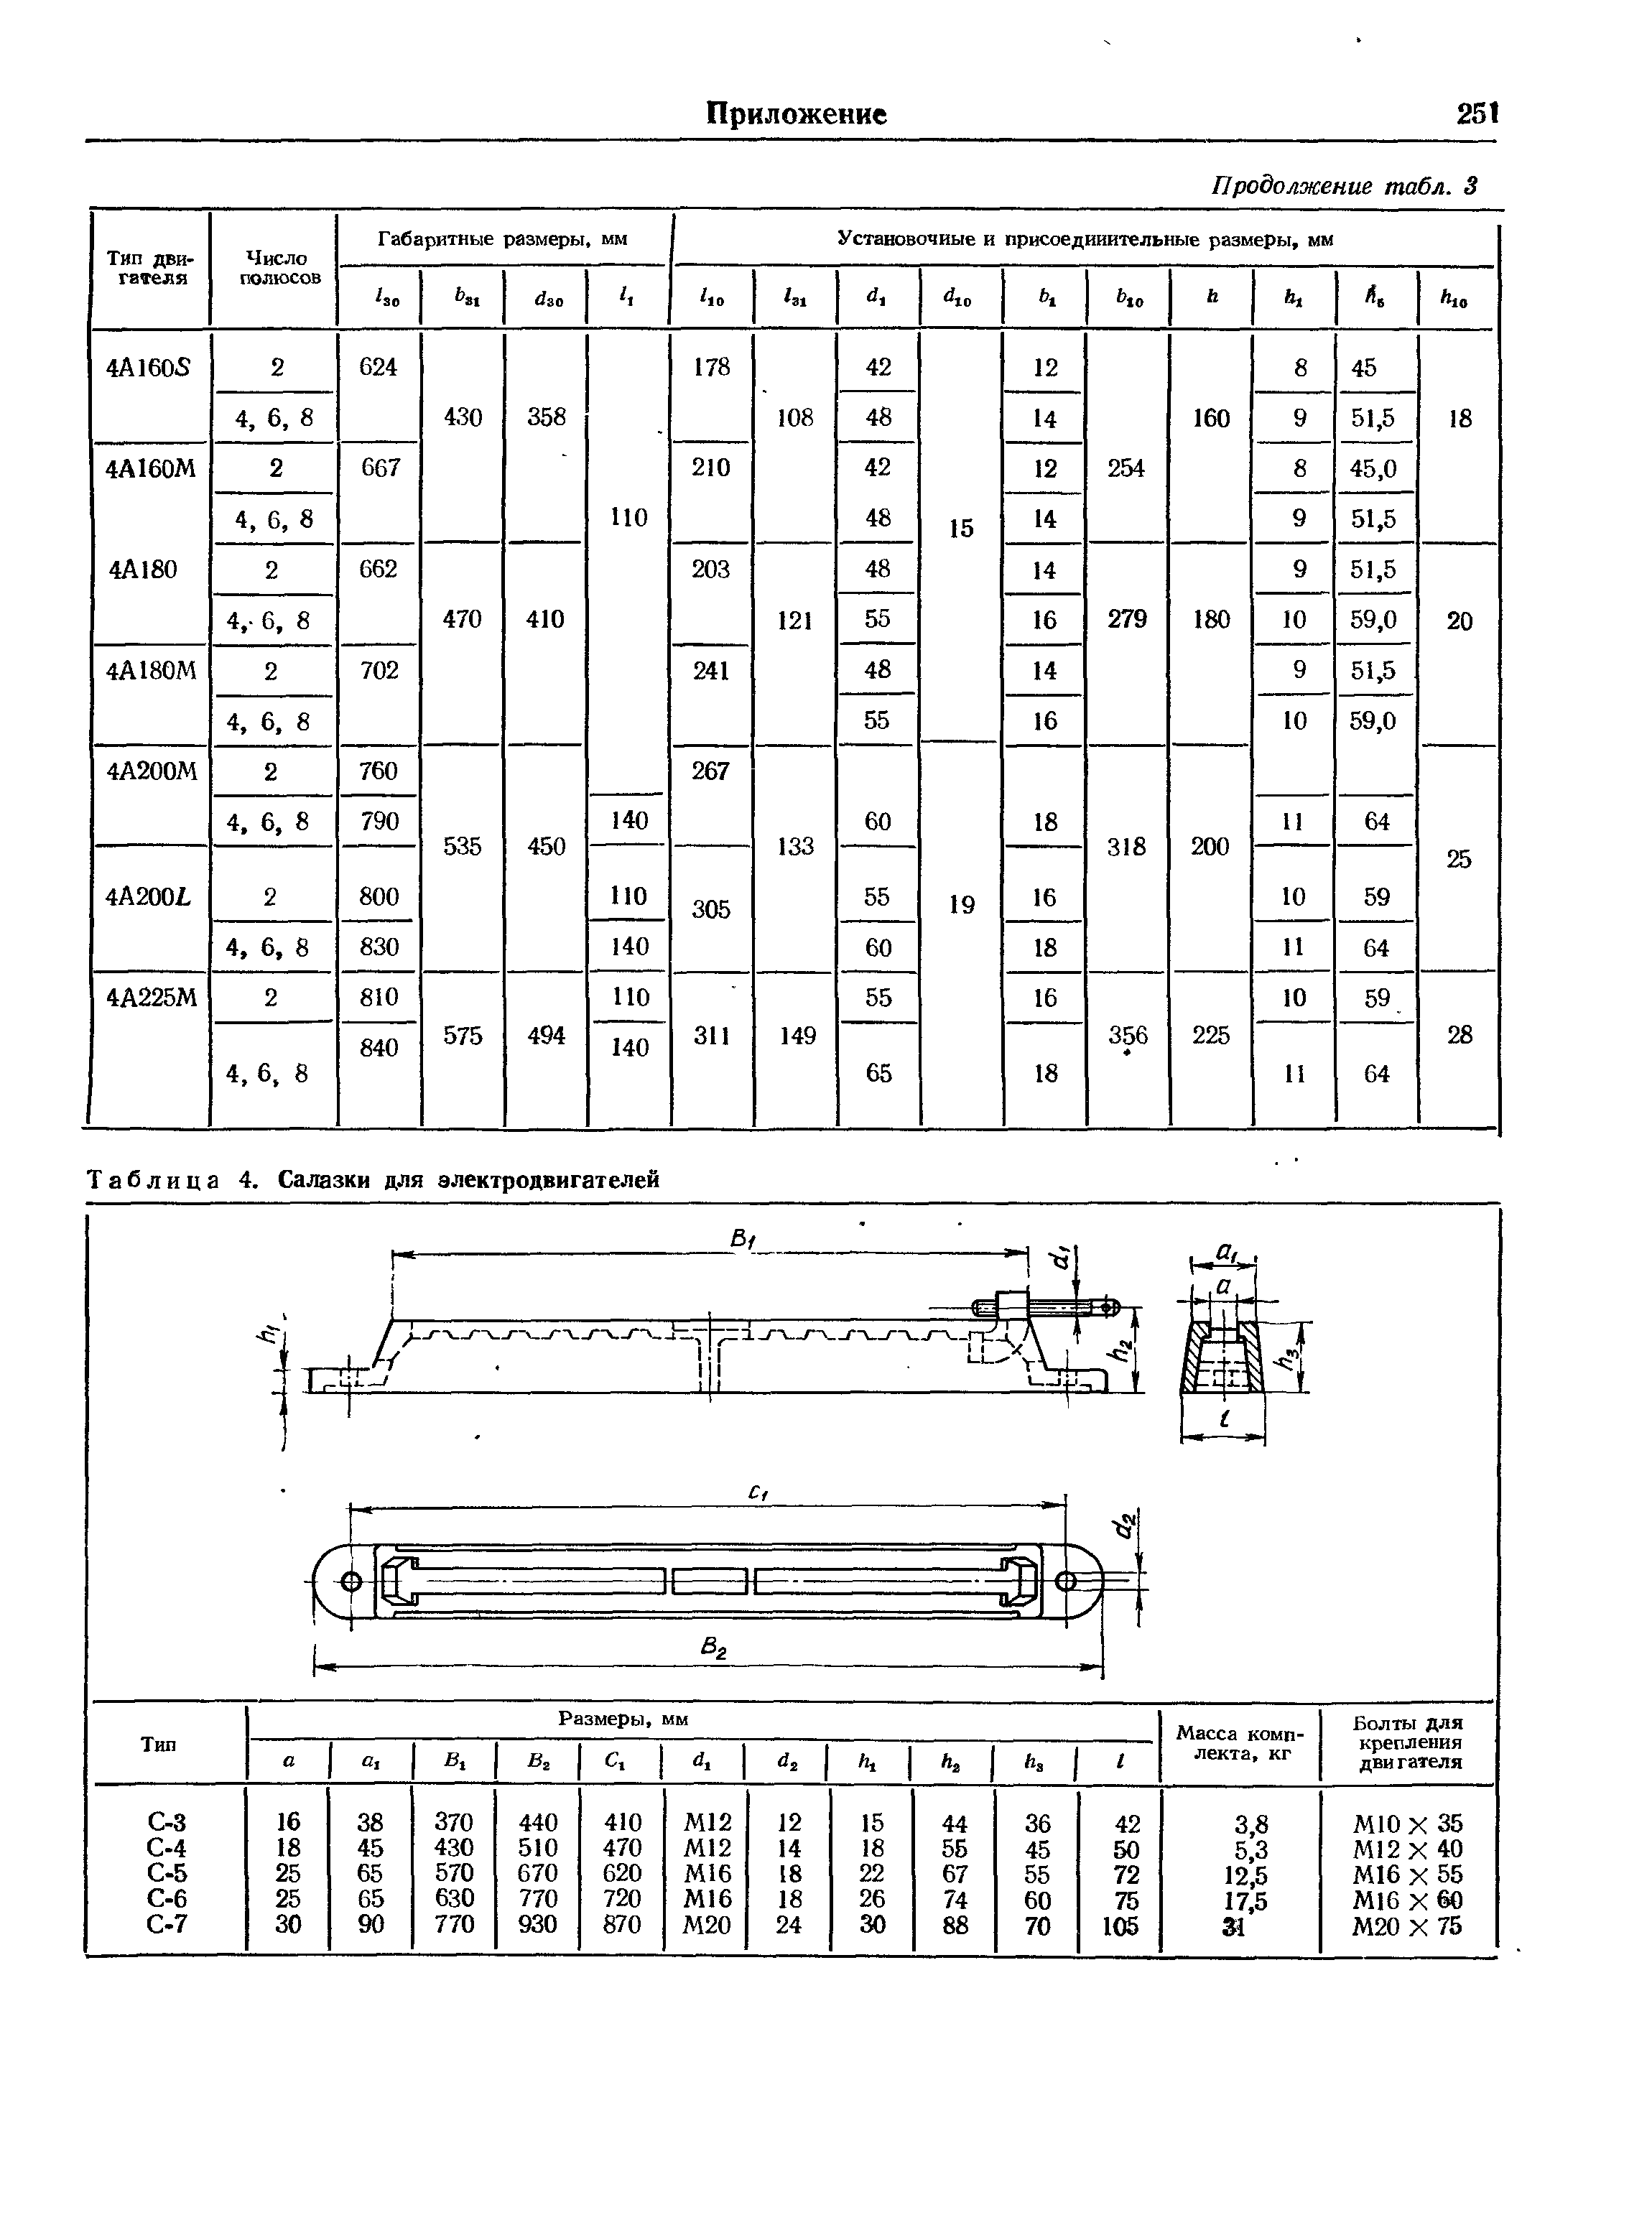 Таблица 4. Салазки для электродвигателей
